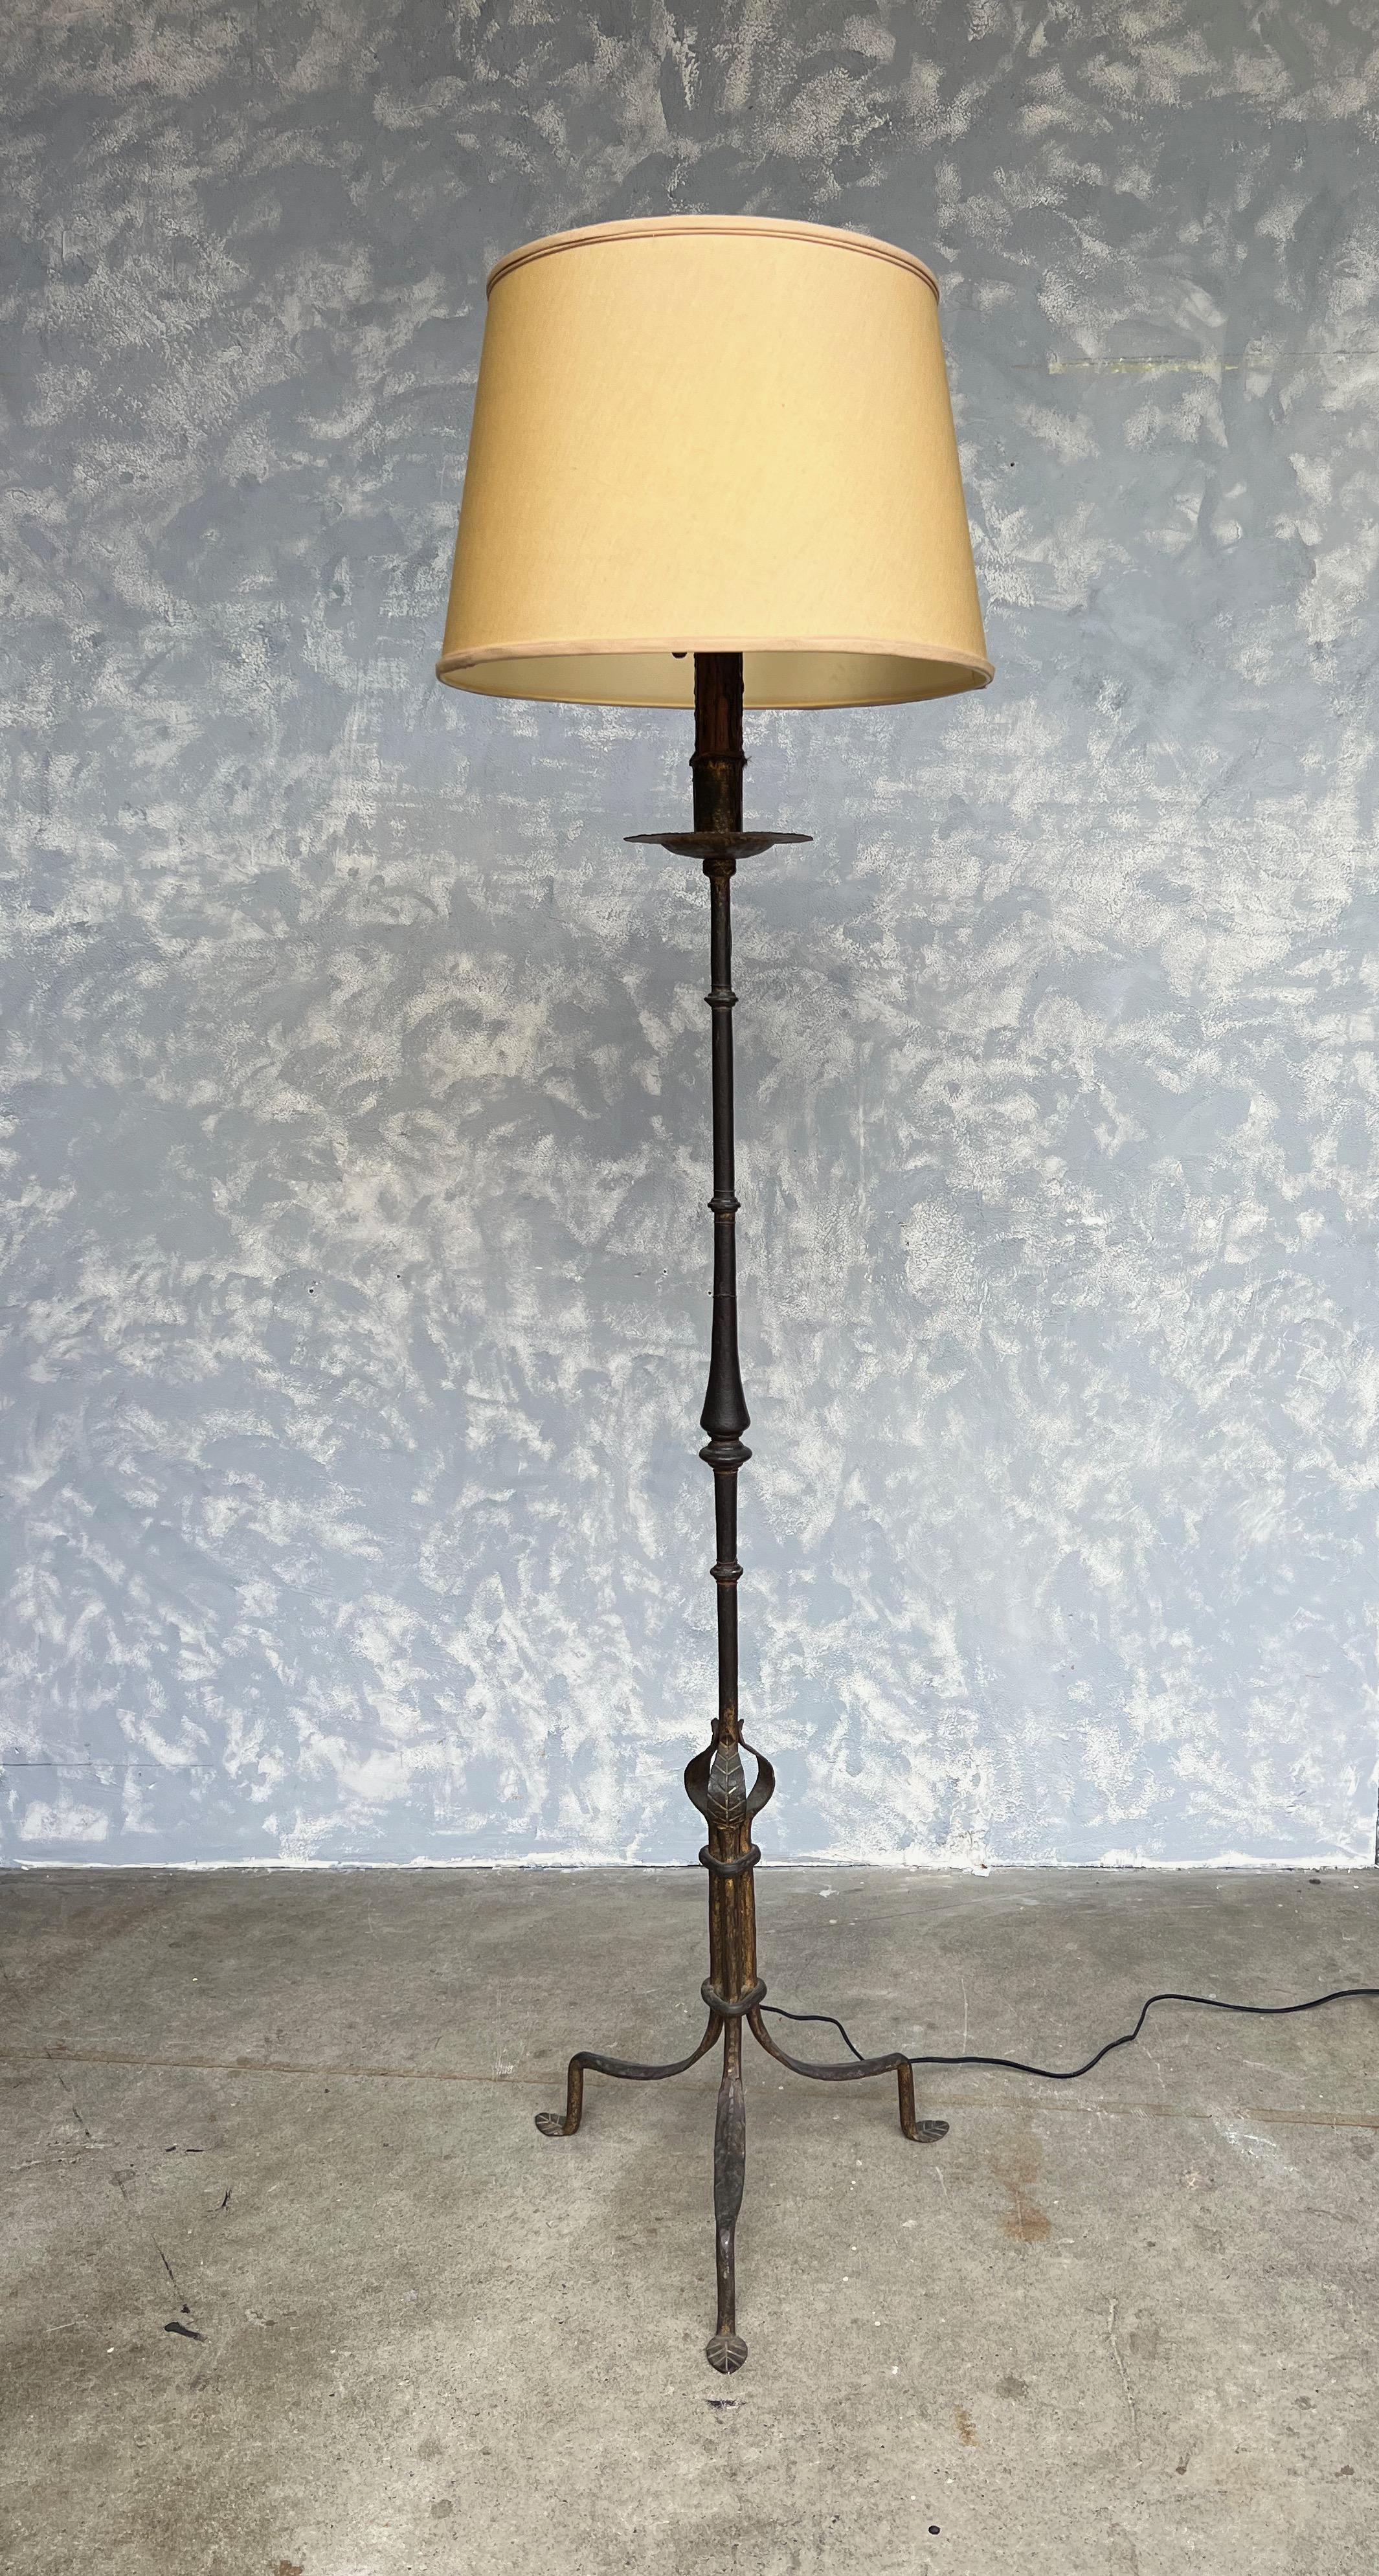 Voici un extraordinaire lampadaire espagnol en fer doré des années 1950 reposant sur une base tripode surélevée. Cette lampe arbore une patine or foncé magnifiquement vieillie et une étonnante texture martelée à la main, créant un attrait visuel